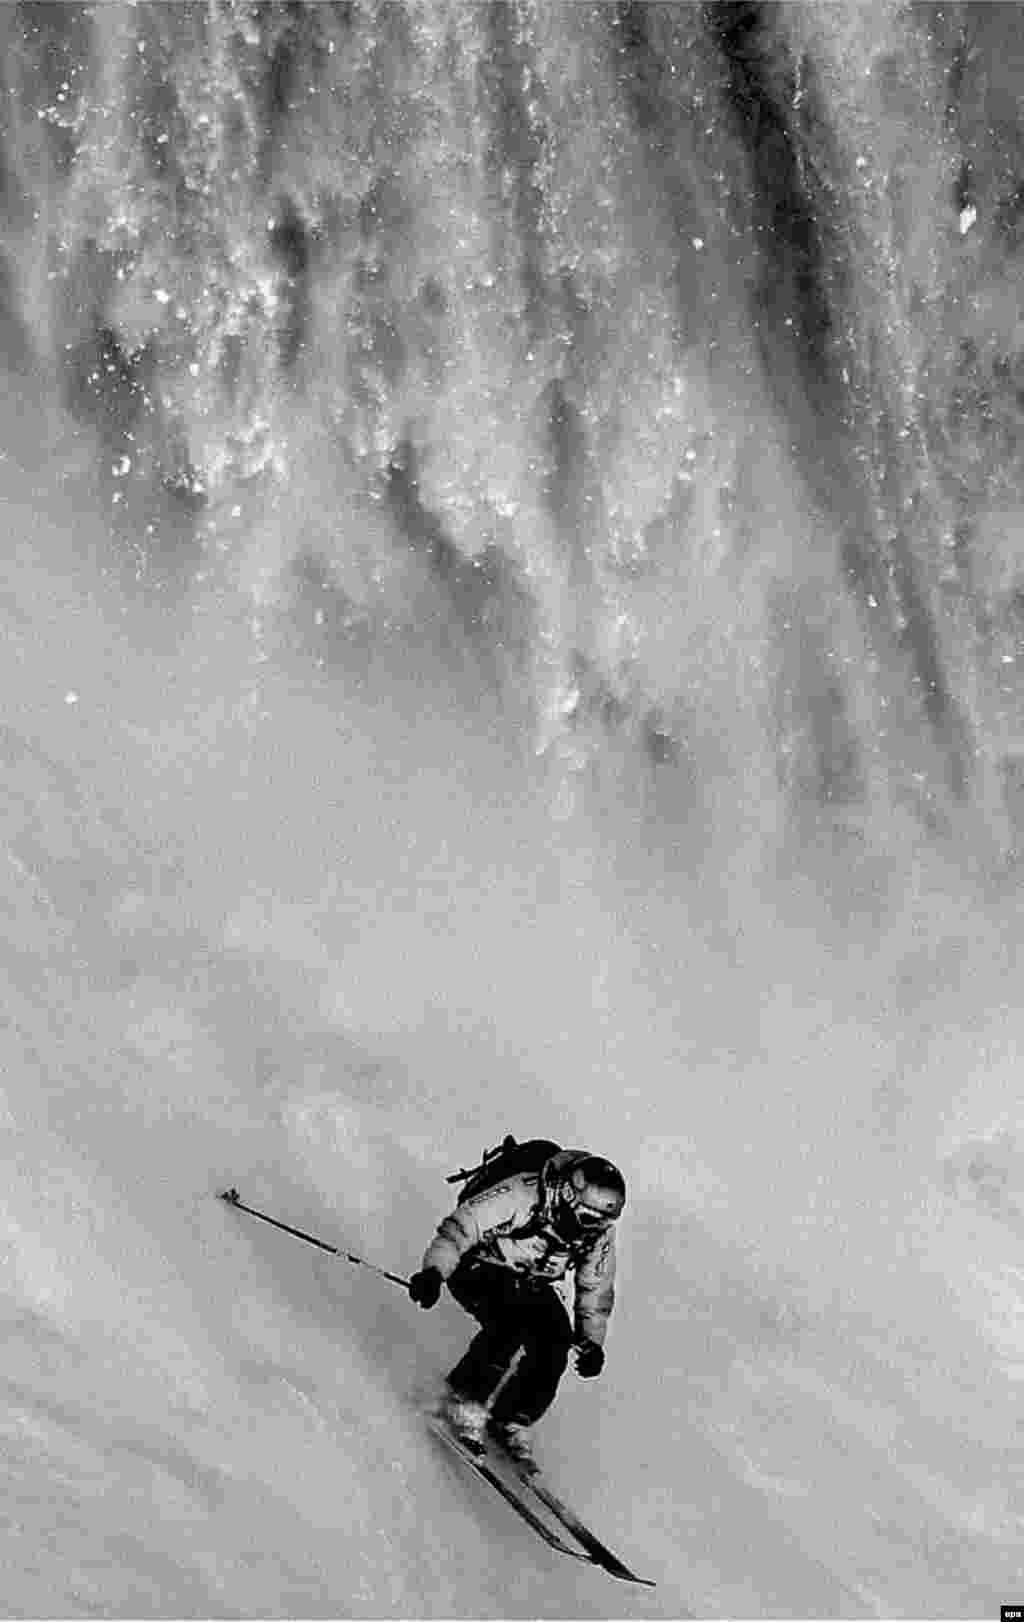 Участник соревнования по фрирайду Филипп Мейер уходит от лавины. Флен, Франция, 15 марта 2007 года. Первая премия в категории "Спортивные события" (одиночная фотография). Фотограф Ивайло Велев, Болгария, Bul X Vision Photography Agency